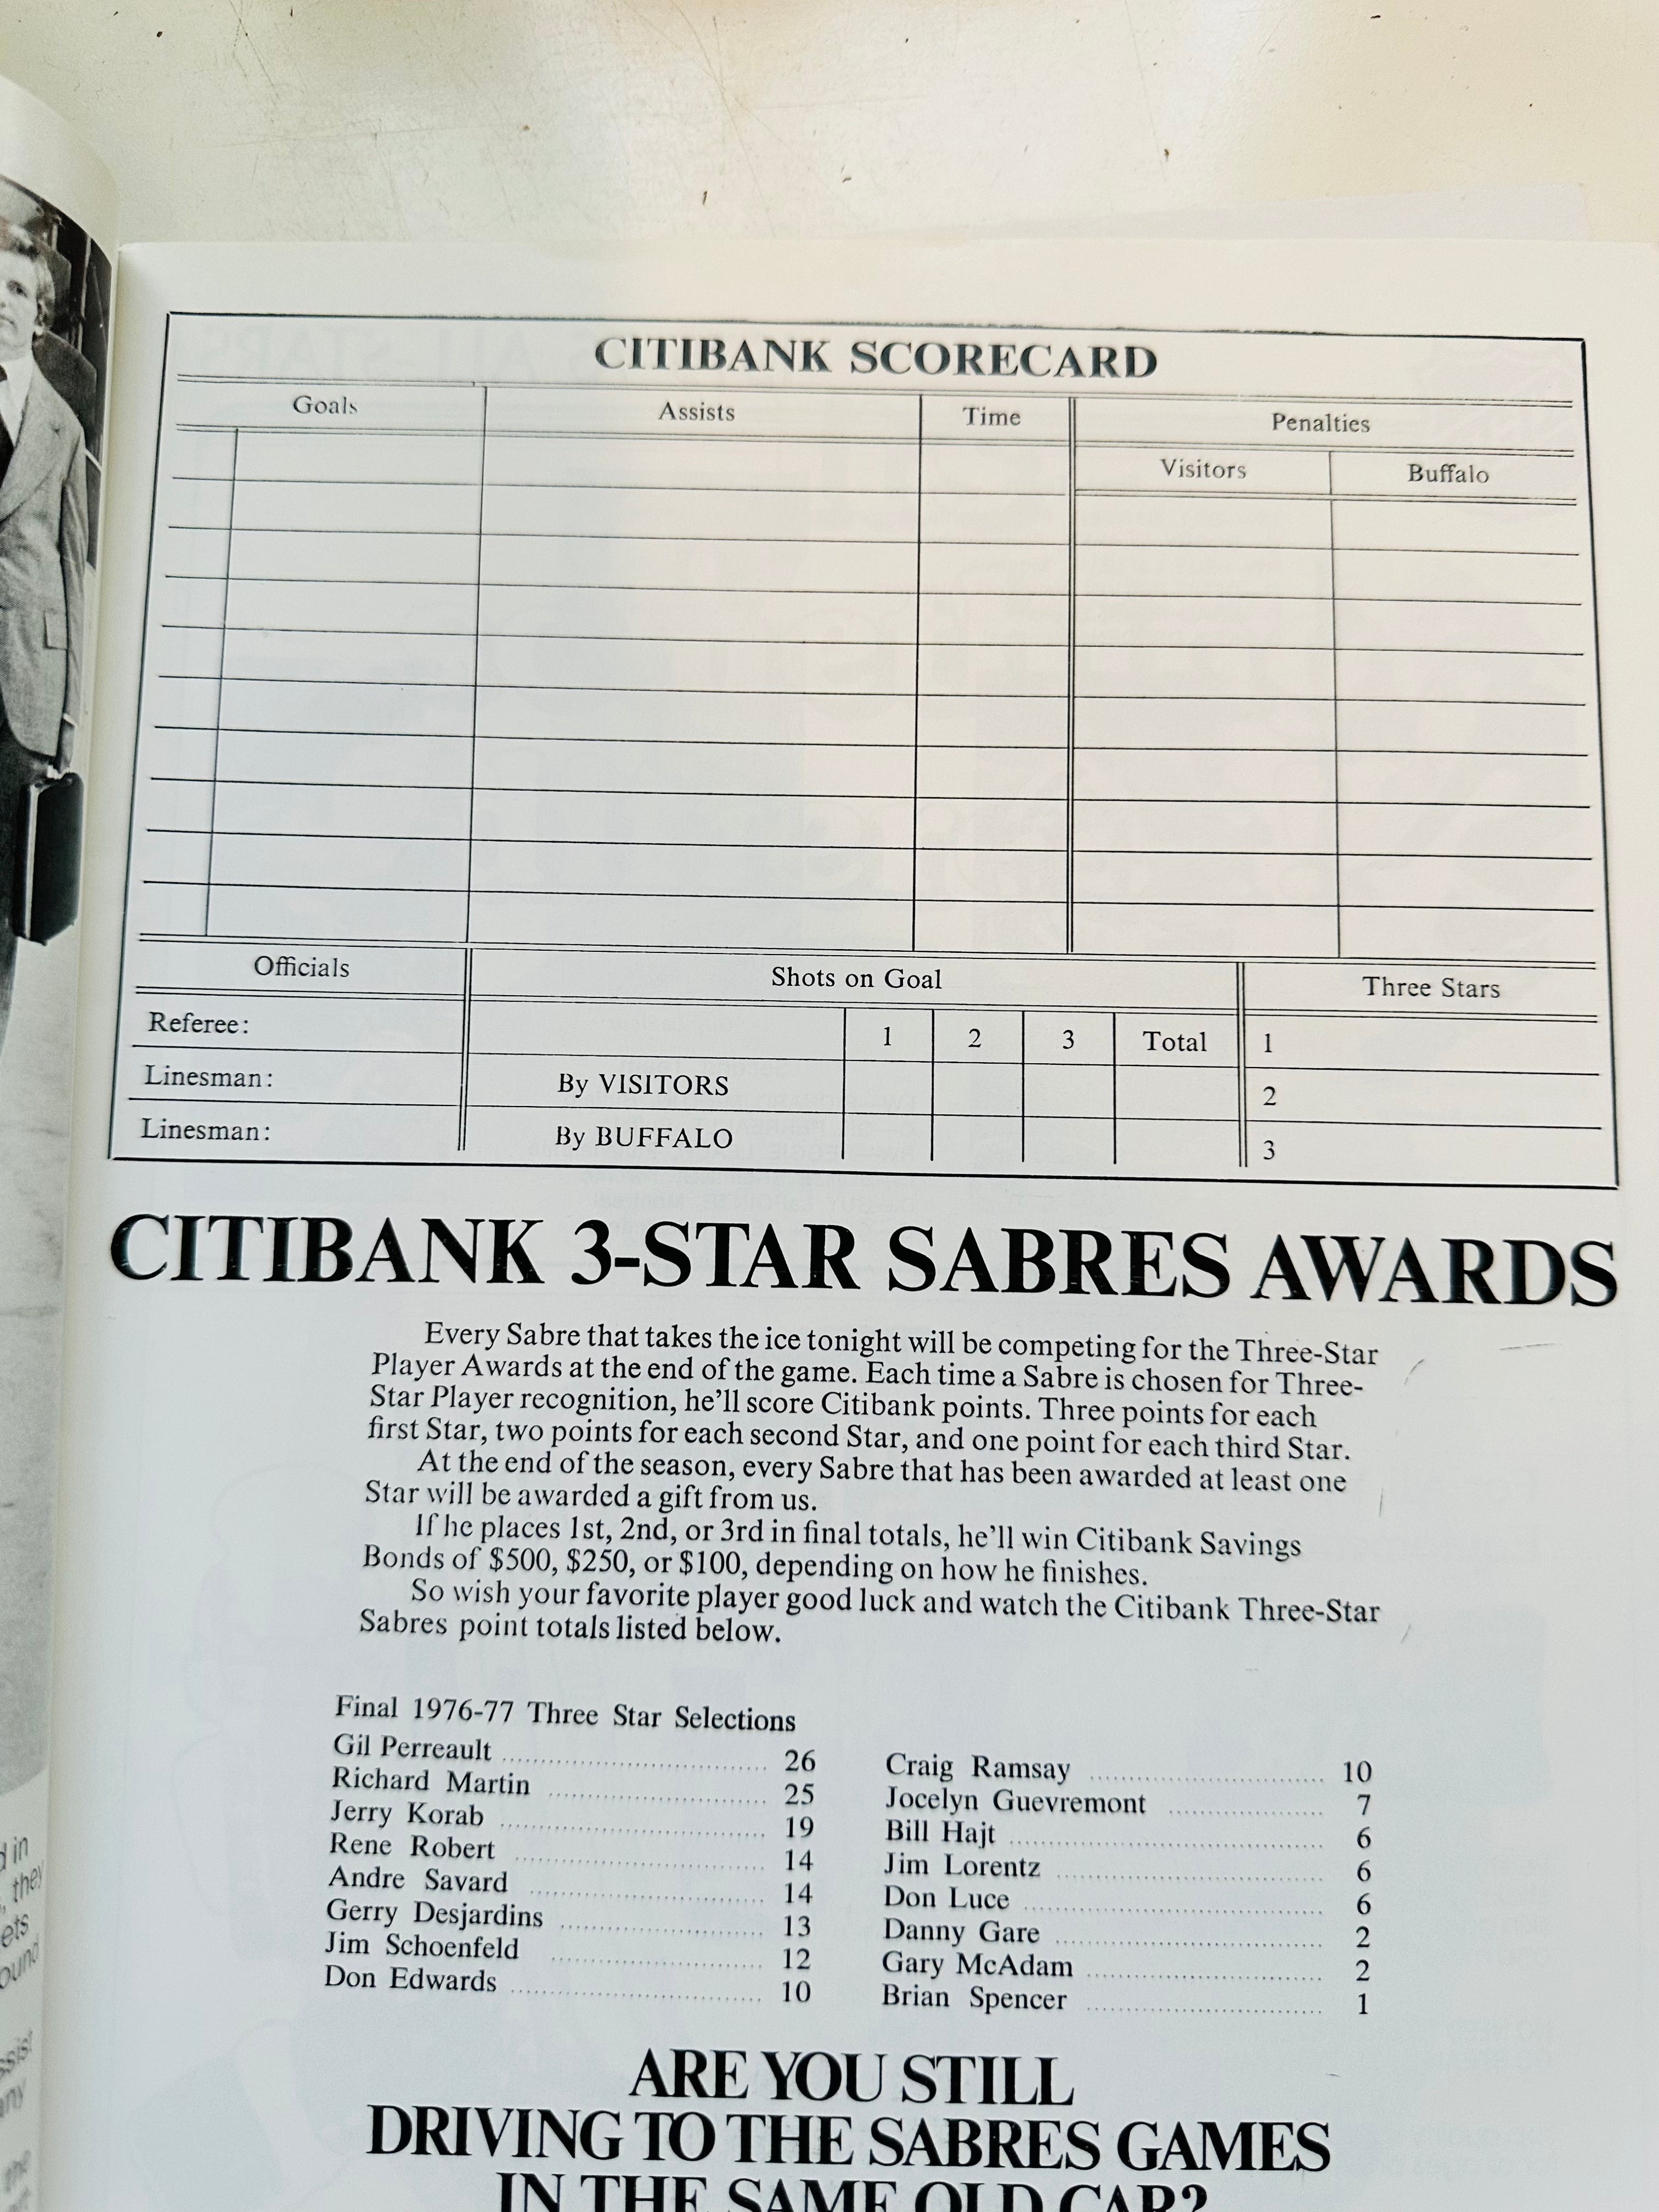 1977 Sabres Vs Islanders hockey game program April